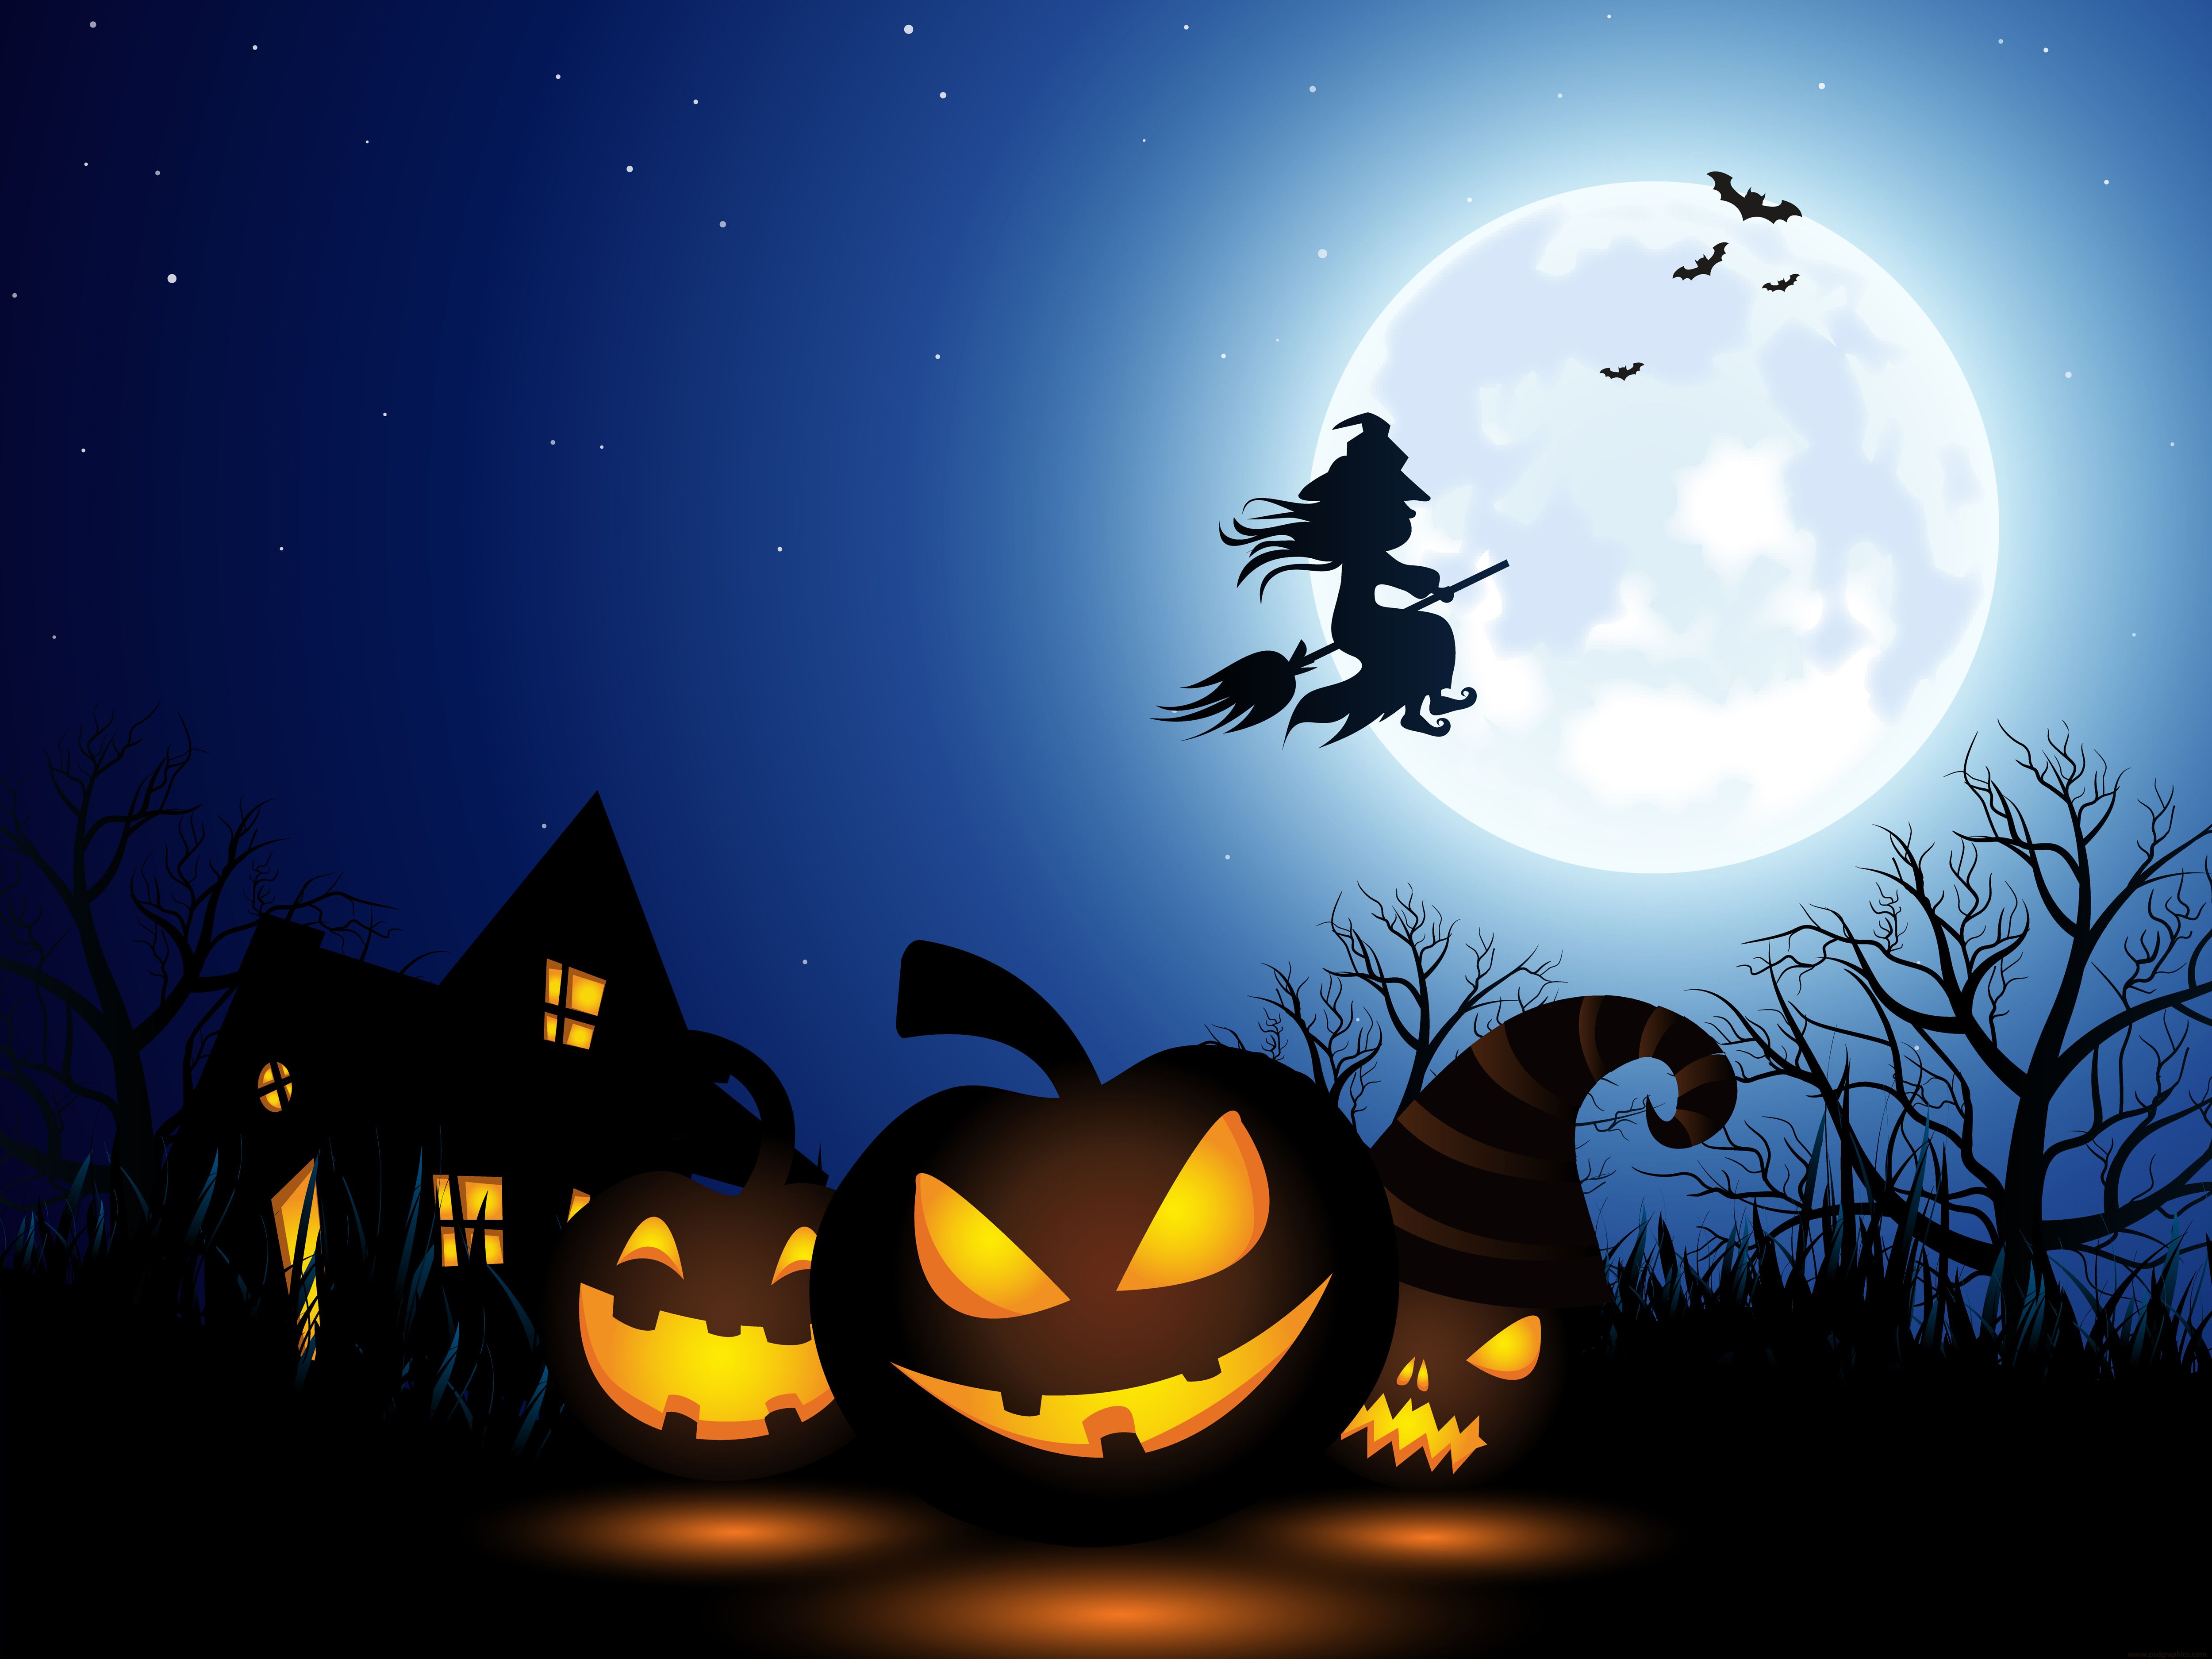 Spooky Halloween illustration.